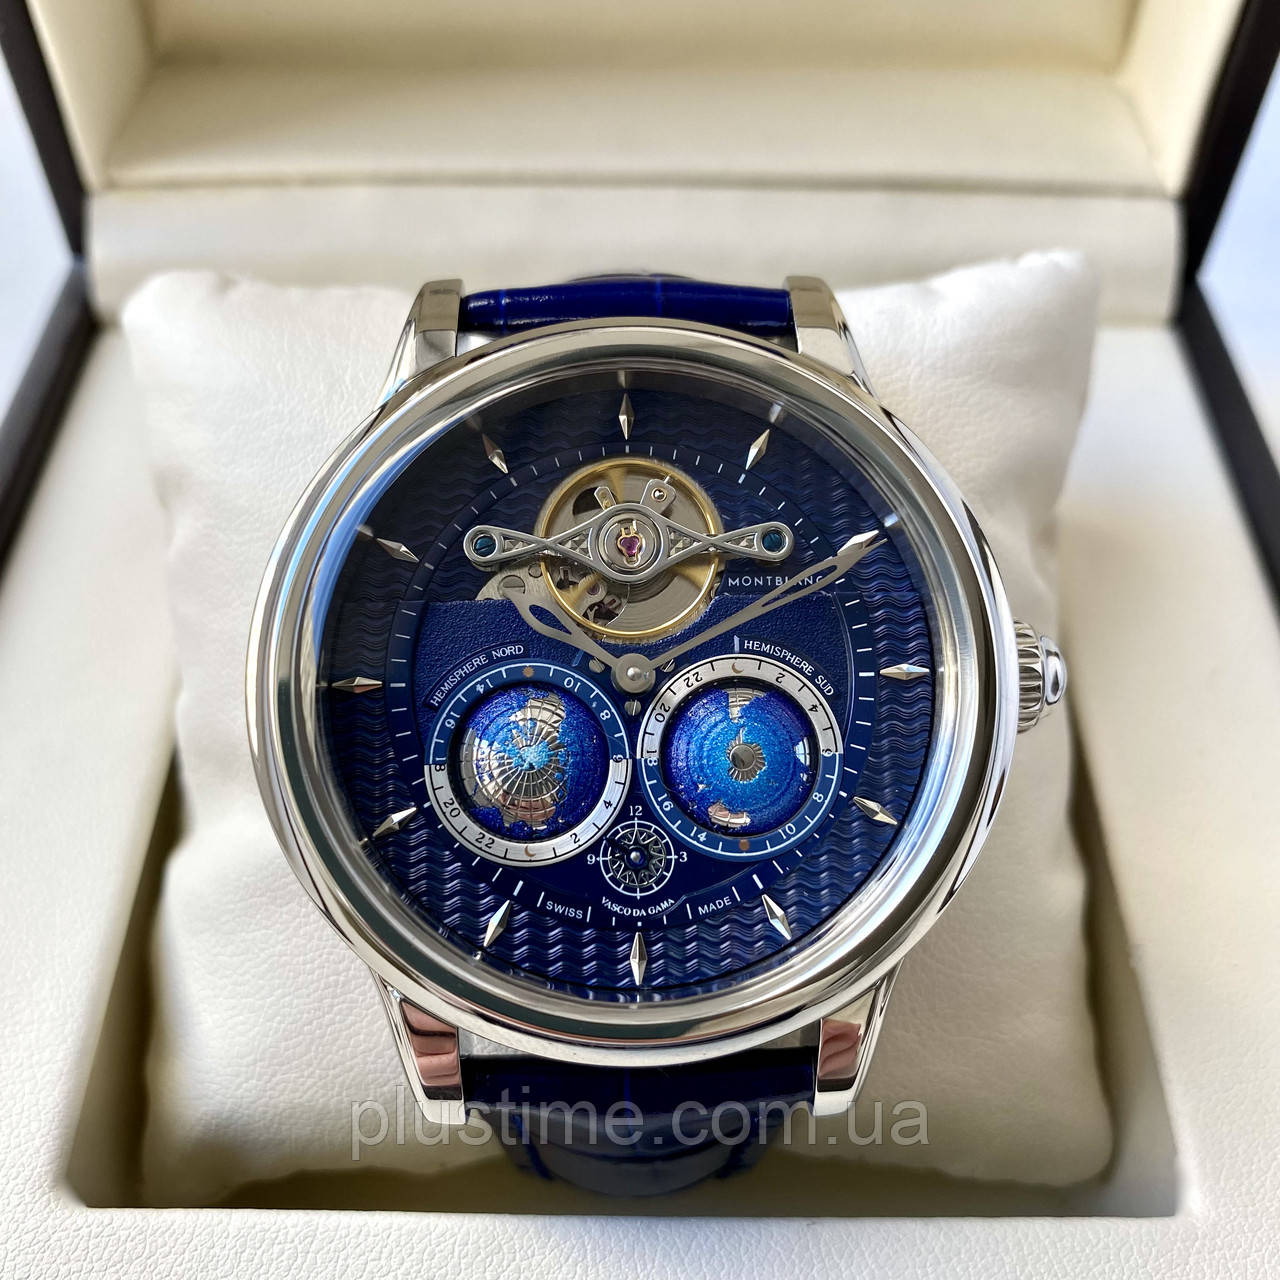 Чоловічий годинник Montblanc Vasco da Gama Tourbillon Blue AAA наручний механічний з автопідзаводом і сапфіром